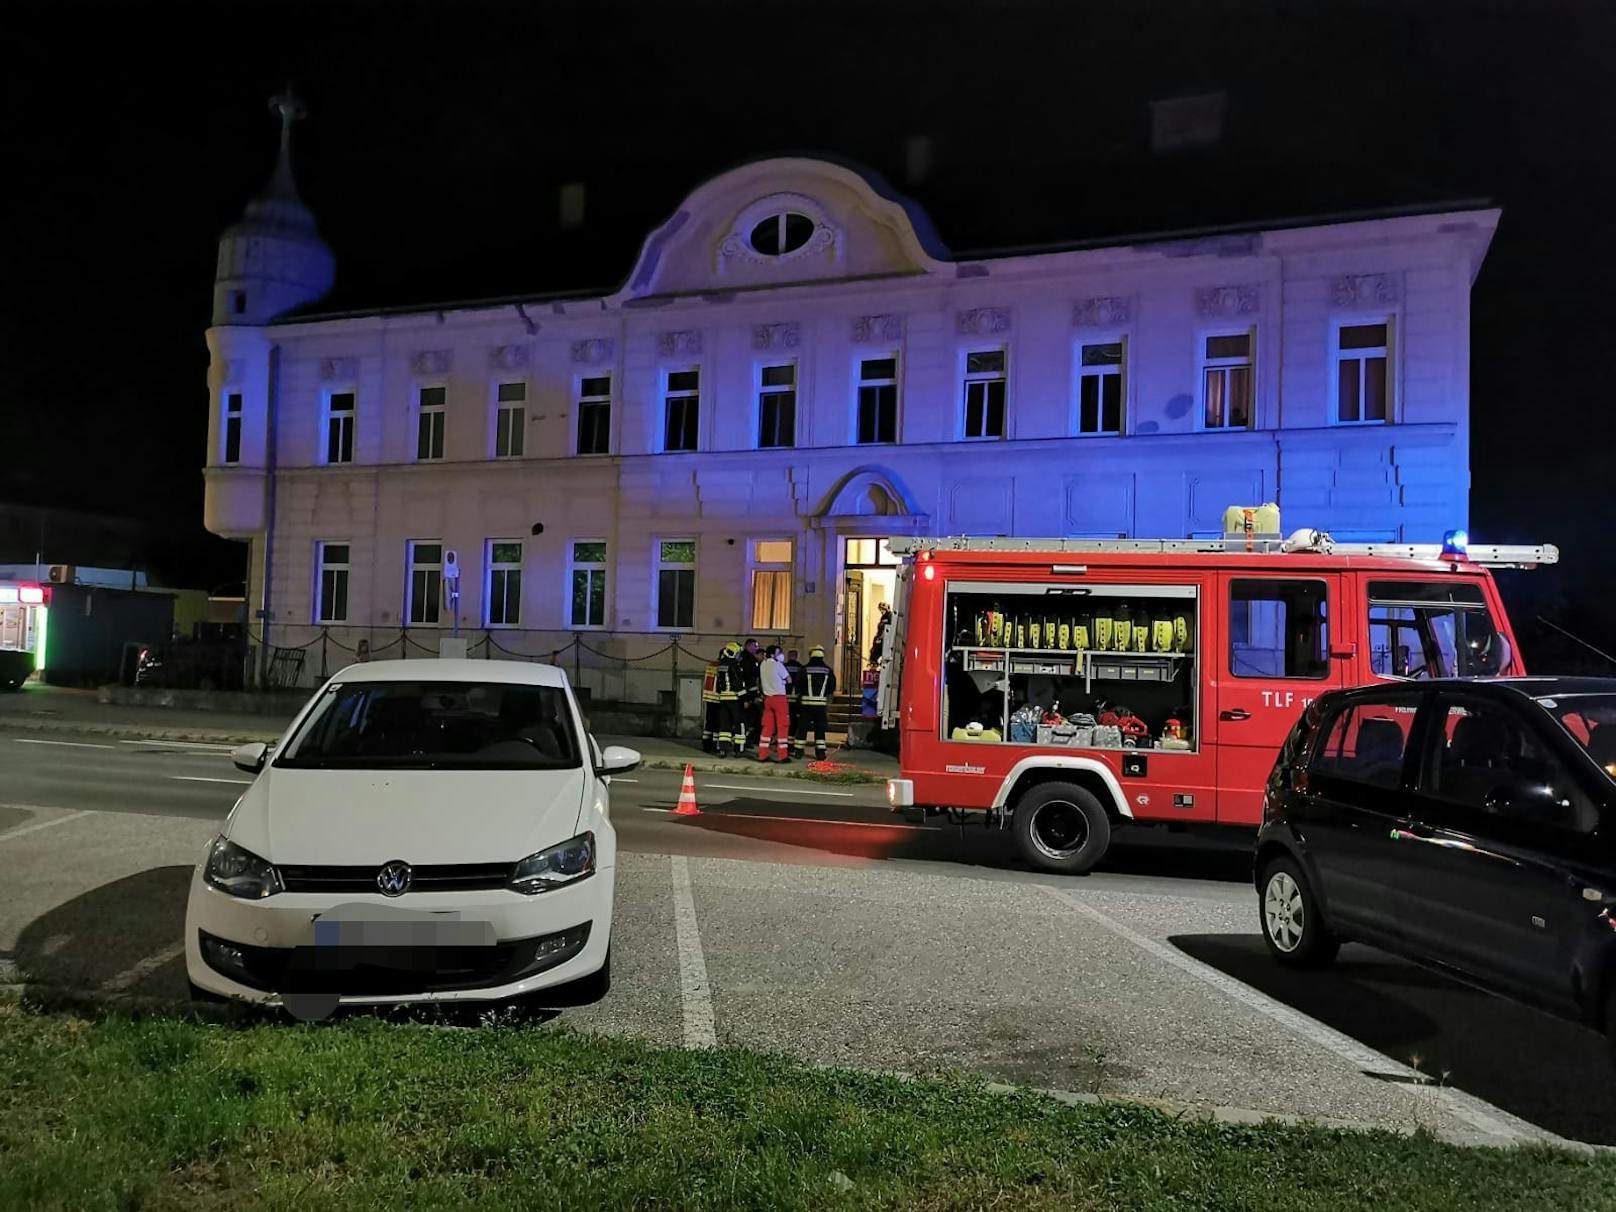 Rettung, Feuerwehr und Polizei rückten aus um ein Wohnhaus in Bruckneudorf zu evakuieren. Zwei Bewohner mussten wegen Kohlenmonoxid(CO)-Vergiftung ins Spital.